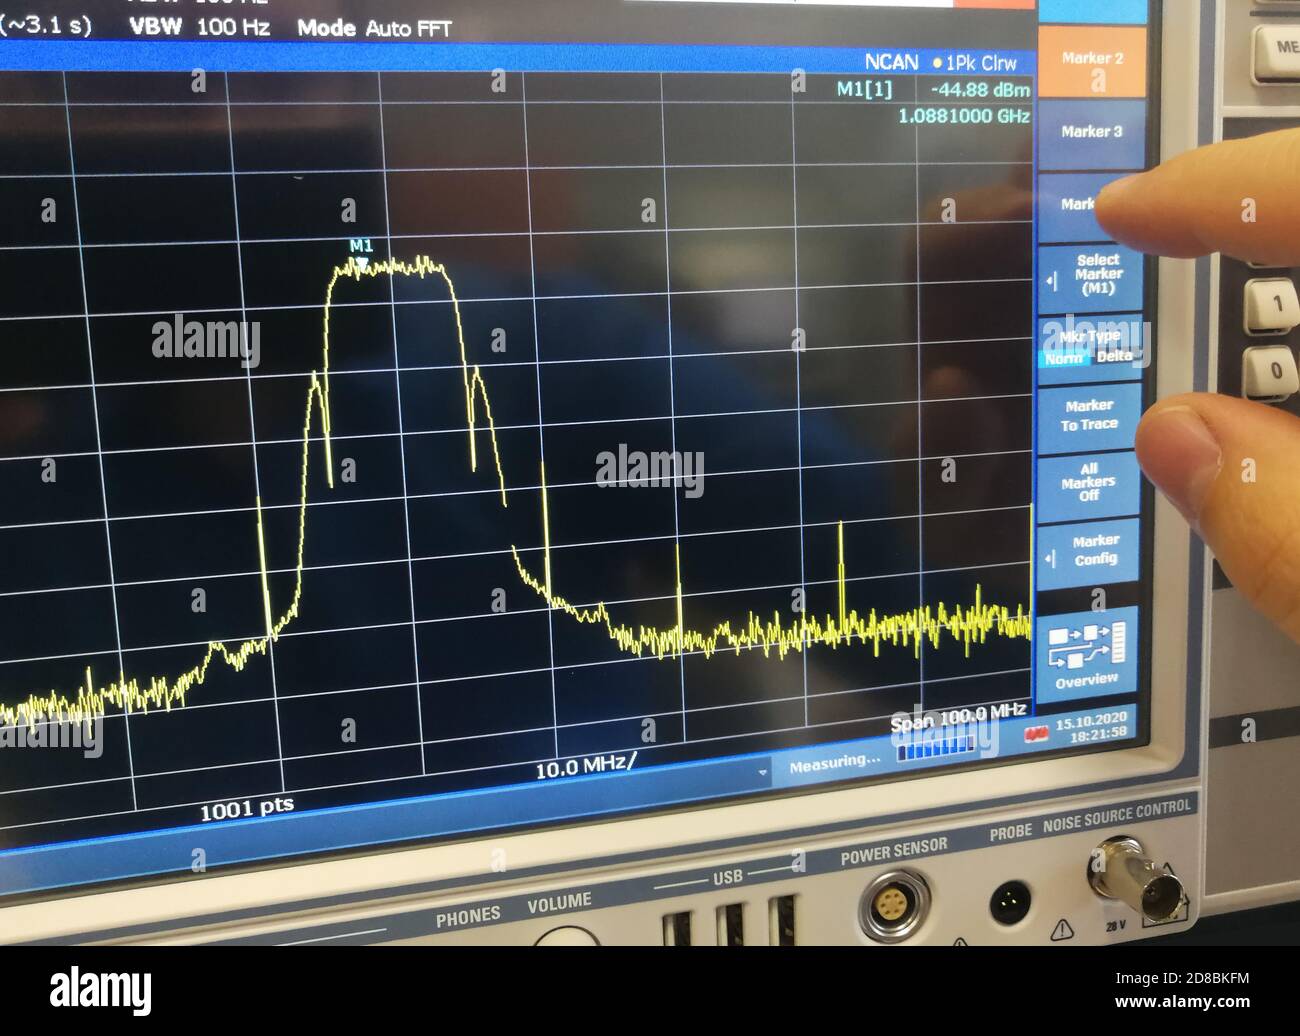 Analisi dello spettro del canale di trasmissione dei dati in radiofrequenza in spettro professionale Schermo LCD dell'analizzatore Foto Stock